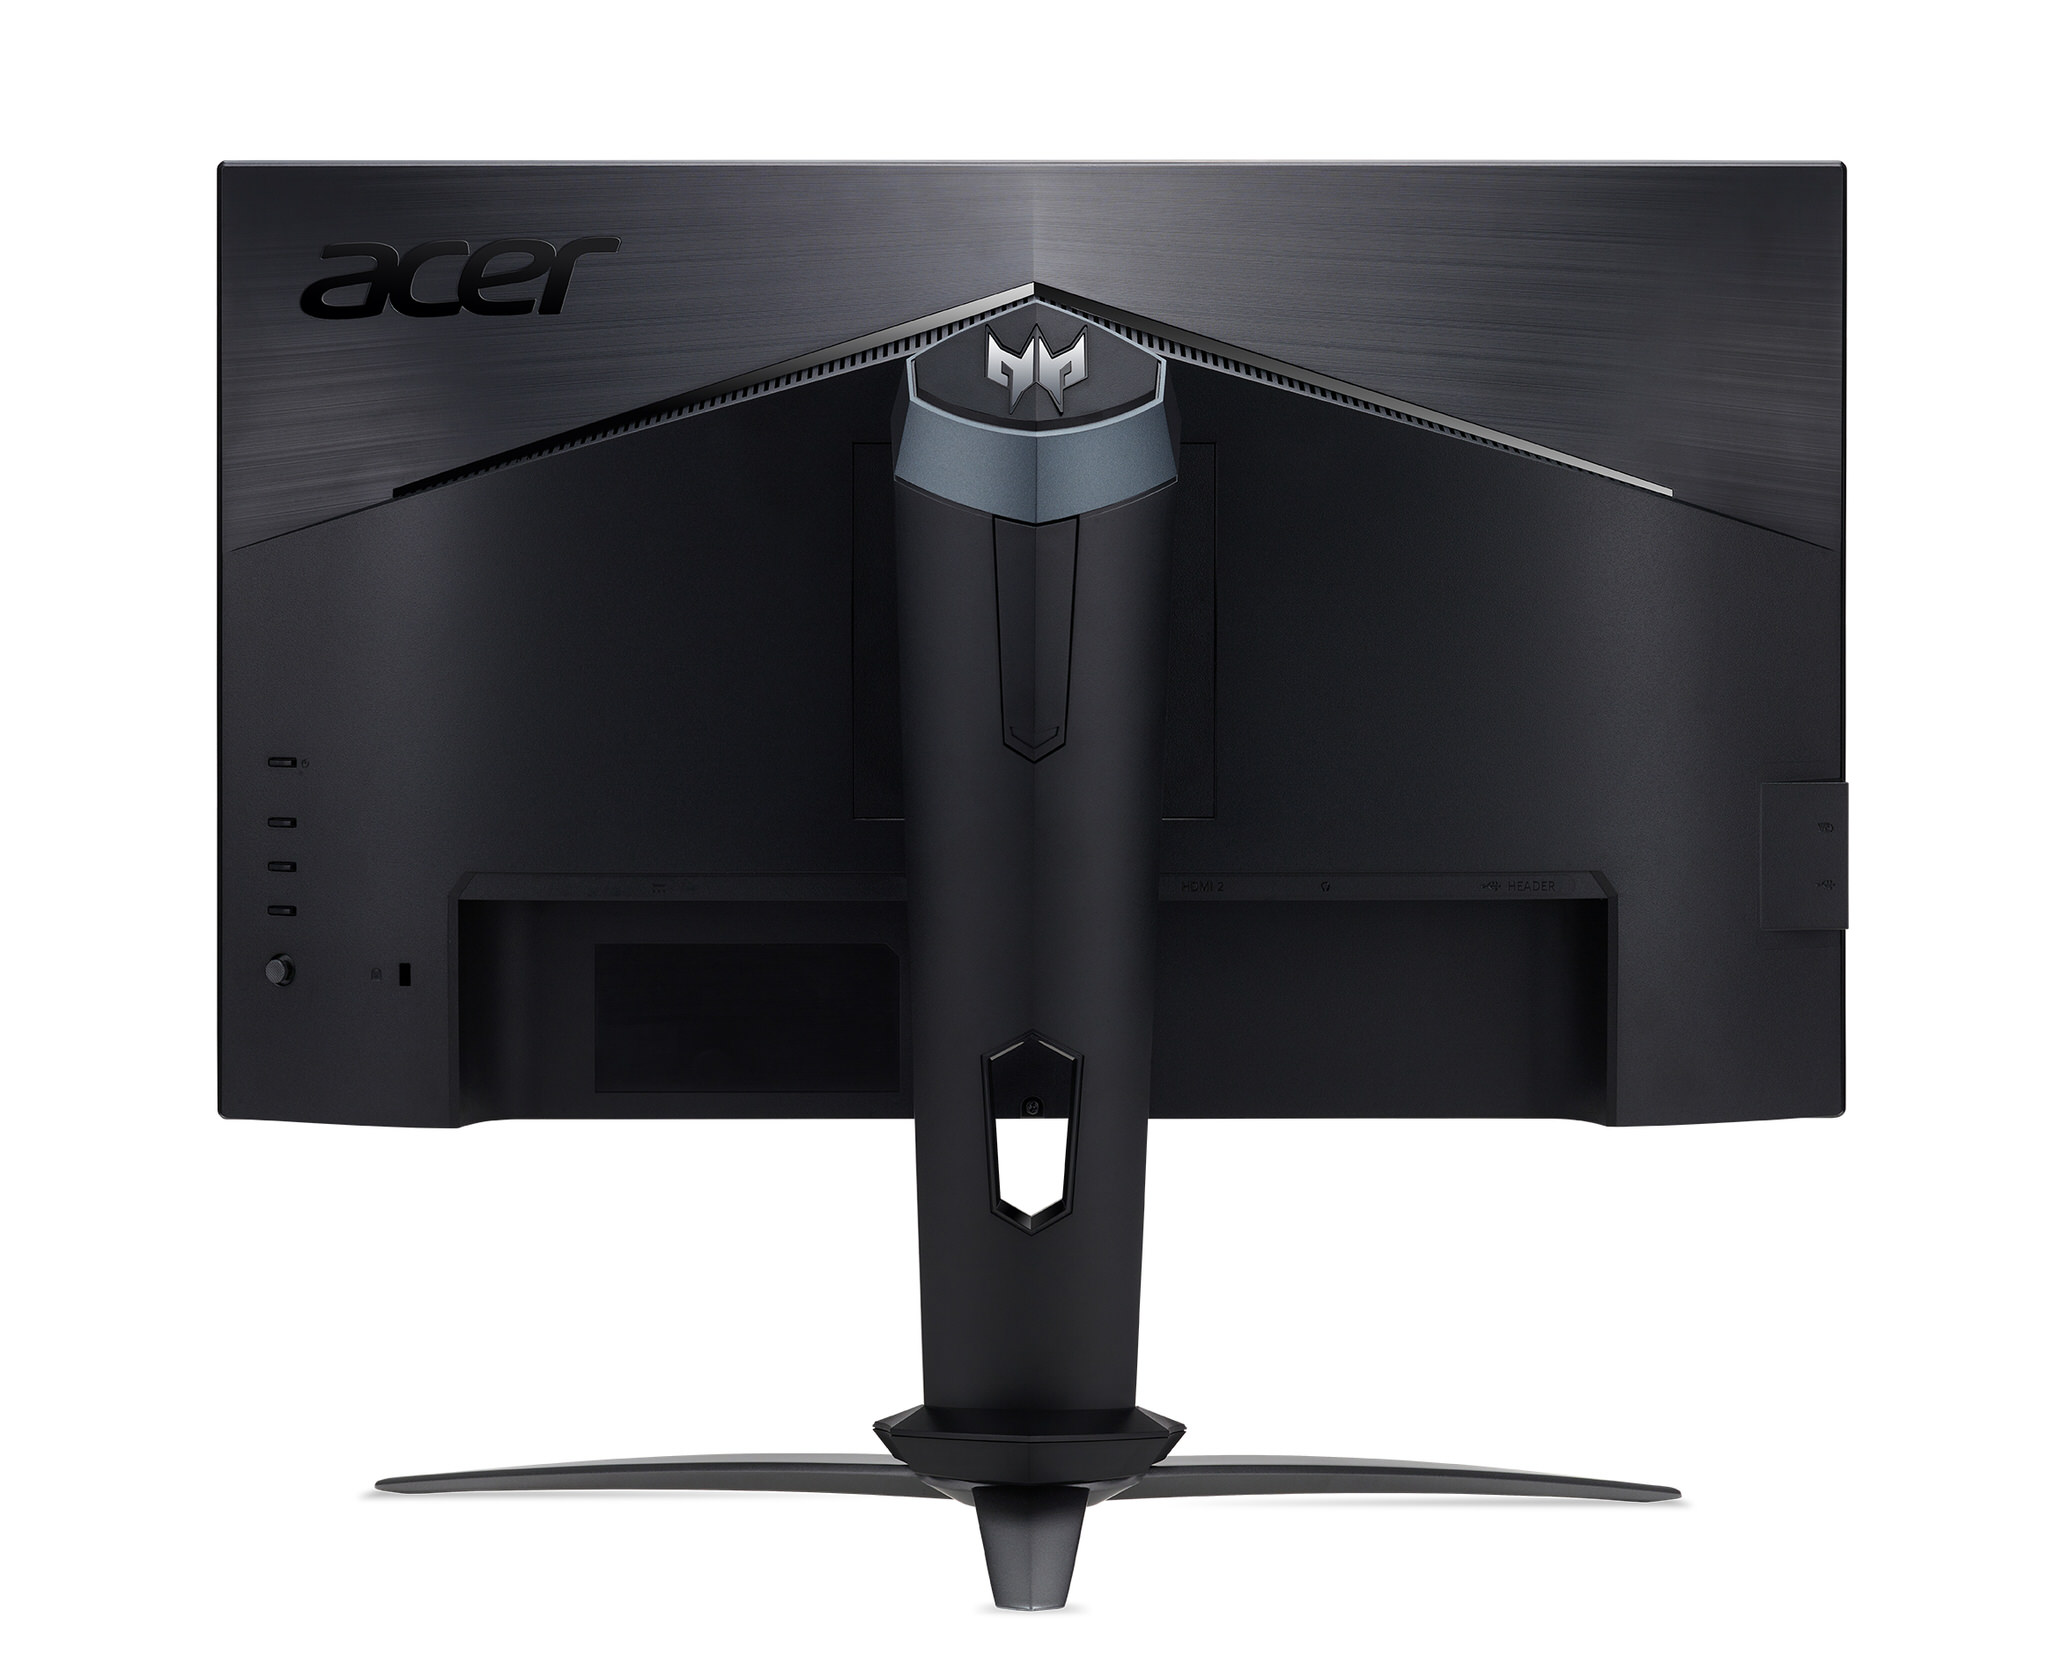 Acer giới thiệu màn hình gaming trang bị tấm nền IPS với tần số quét 240Hz, thời gian phản hồi 0.5ms